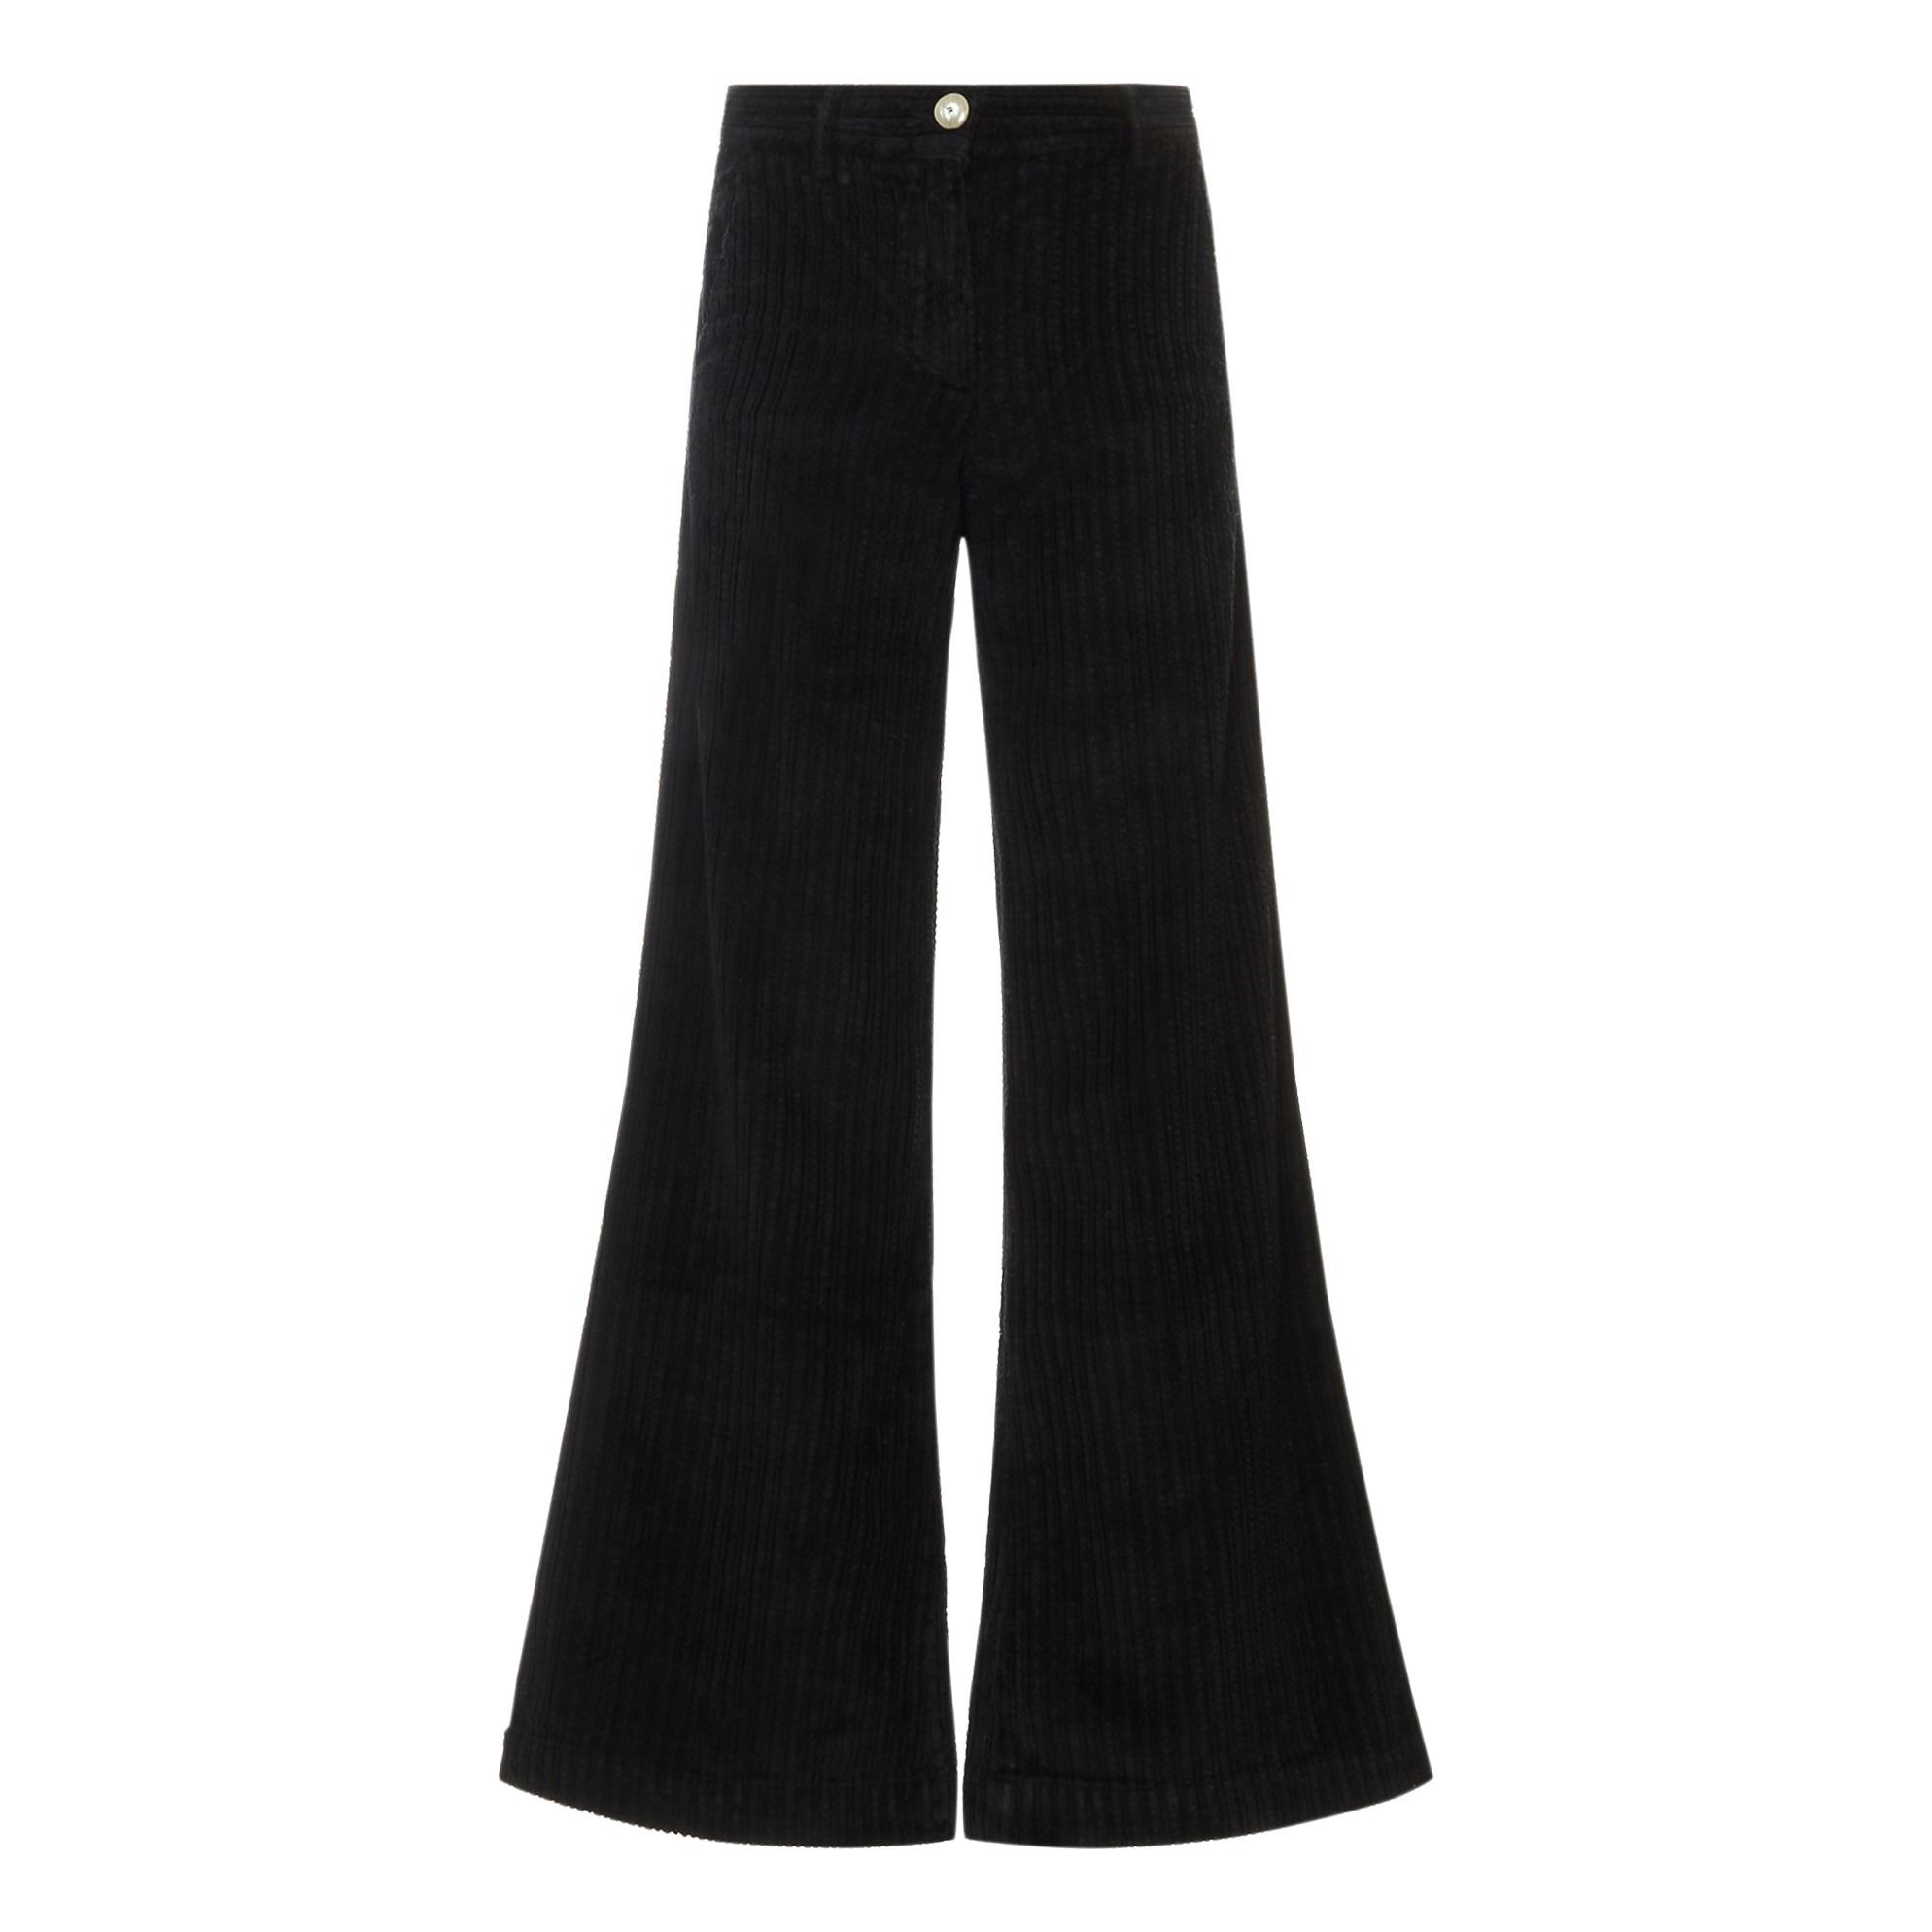 Masscob - Pantalon Velours Côtelé Jean - Femme - Noir